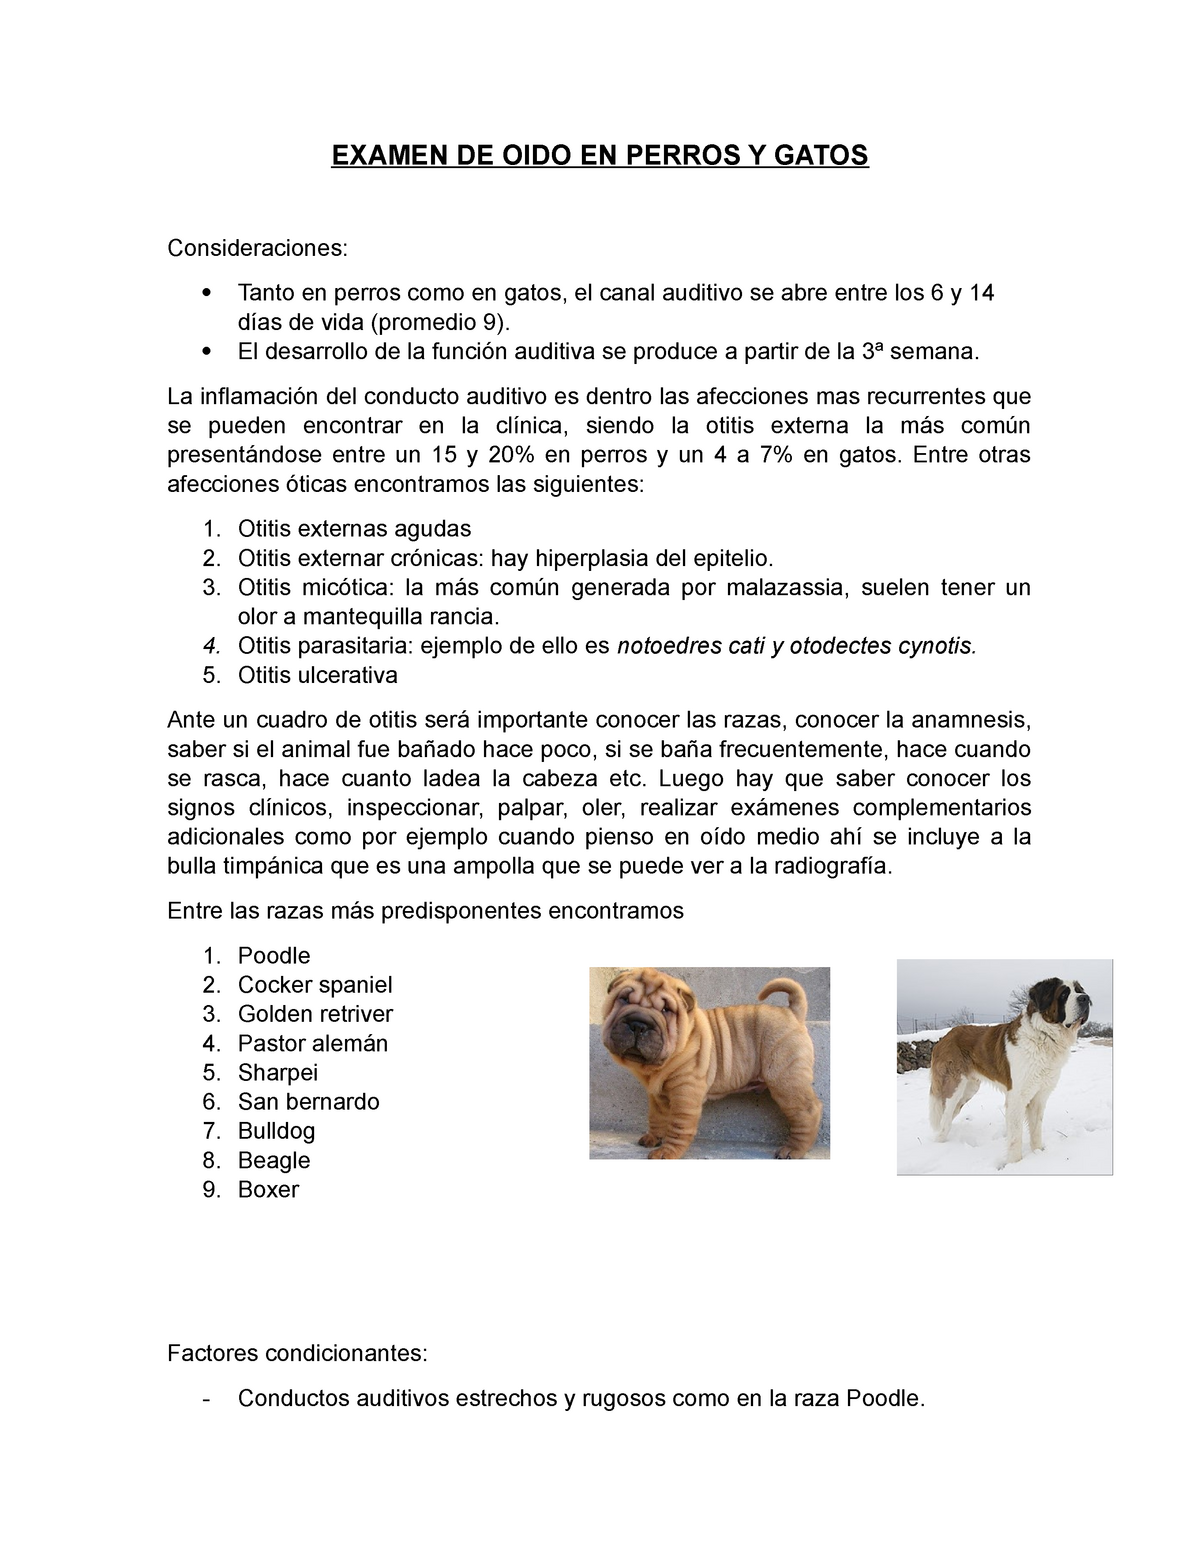 Examen de oido en animales menores - EXAMEN DE OIDO EN PERROS Y GATOS  Consideraciones:  Tanto en - Studocu